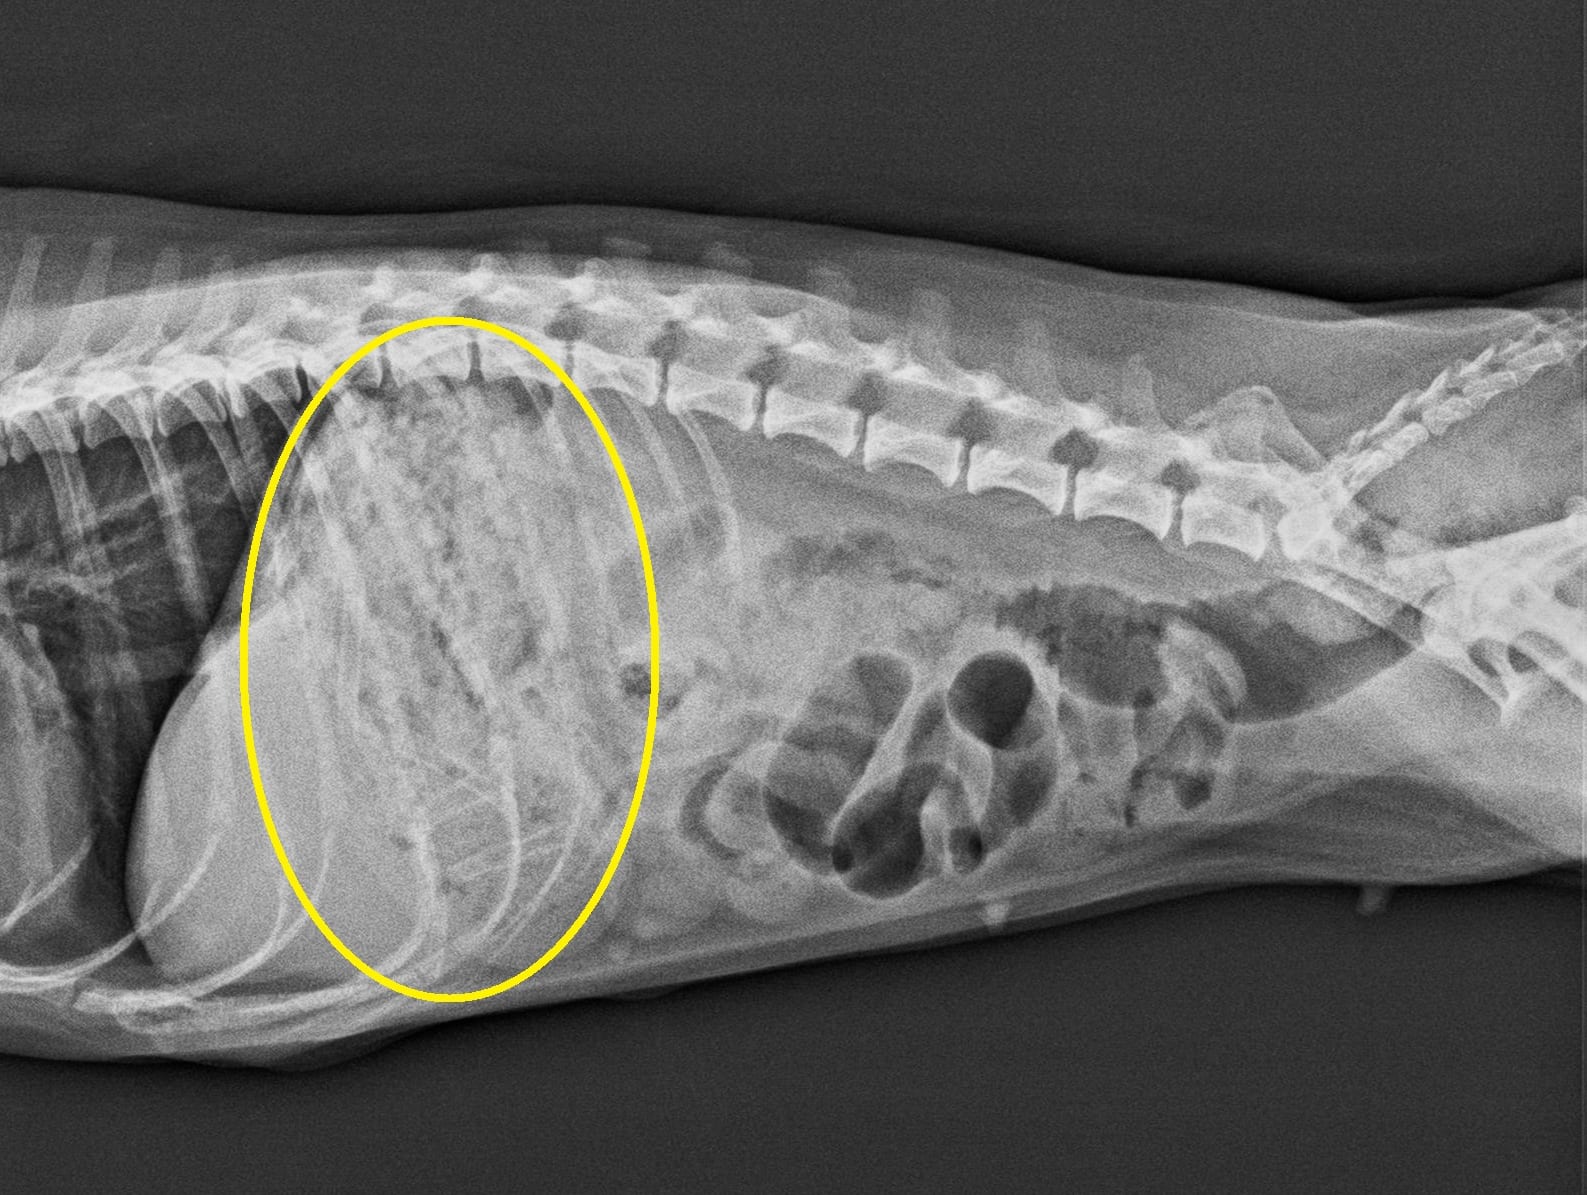 4 犬の胃 腸 切開術 誤食 胃から肛門まで続くヒモ状異物摘出手術 林動物病院